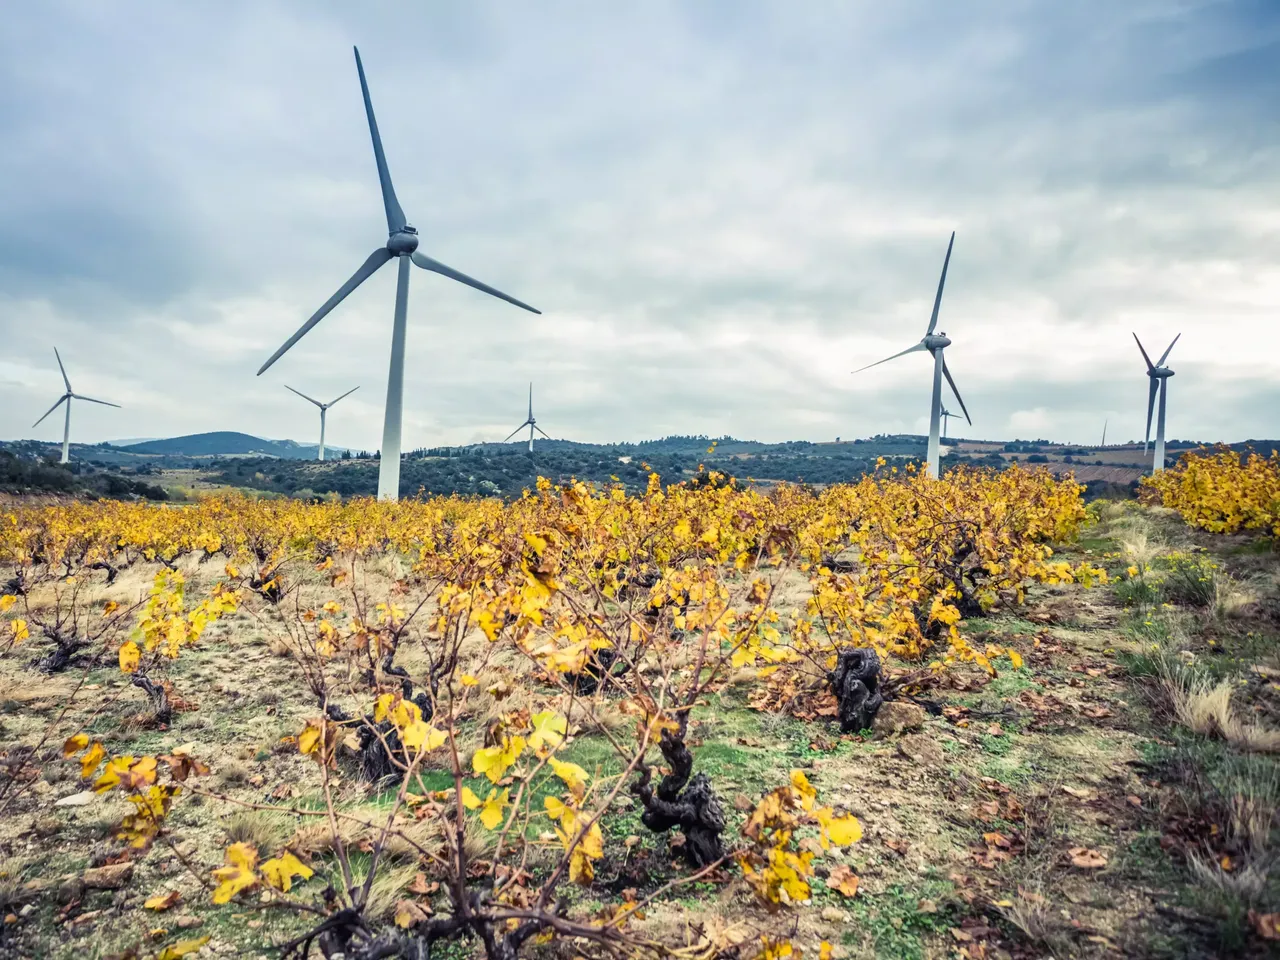 Es wird in einem Blumenfeld der klimaVest Windpark Fenouilledes in Frankreich dargestellt.